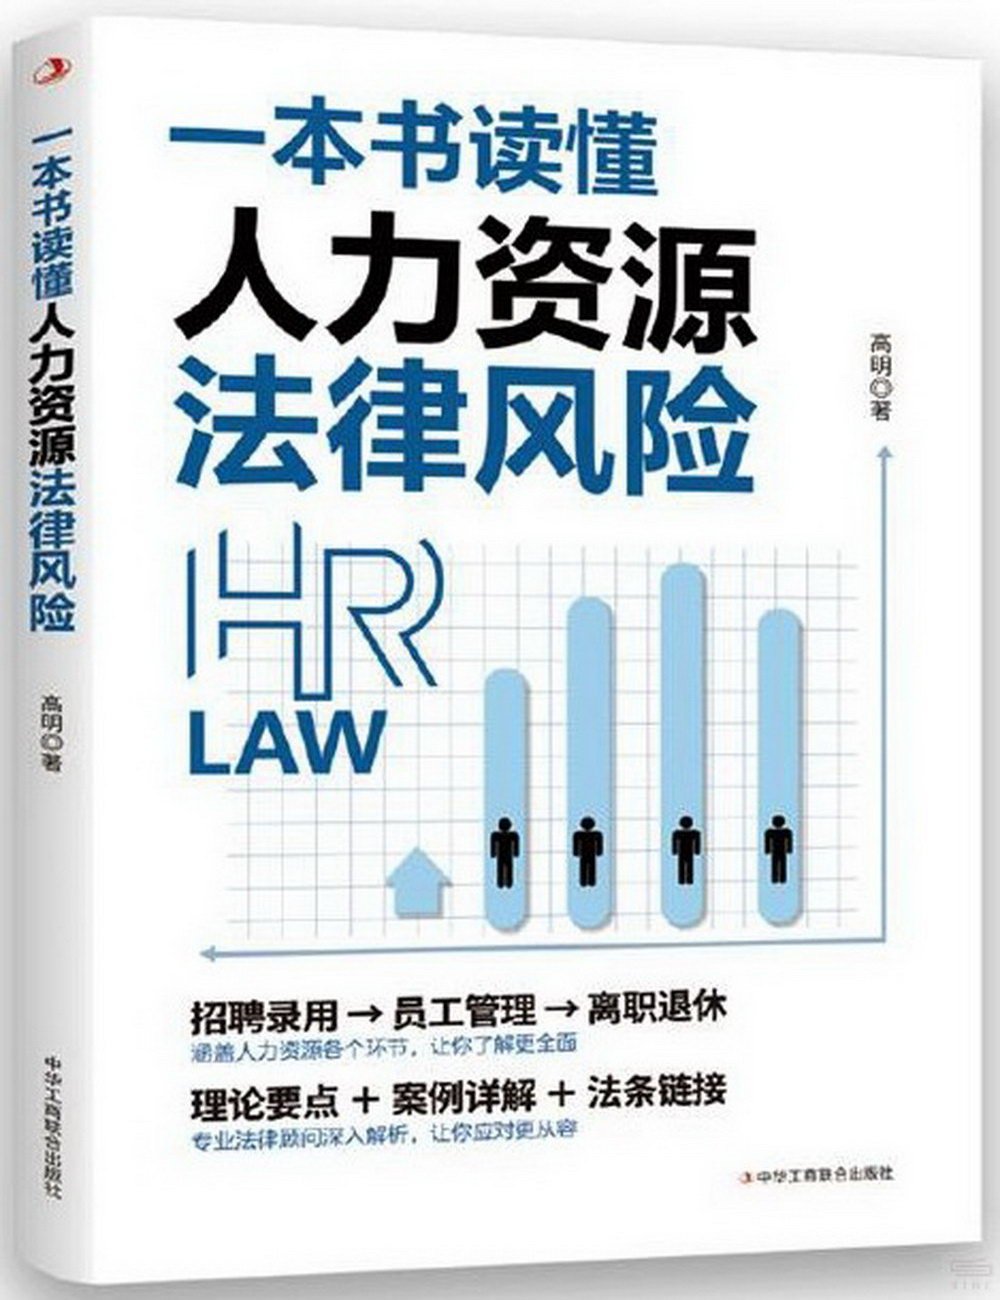 一本書讀懂人力資源法律風險